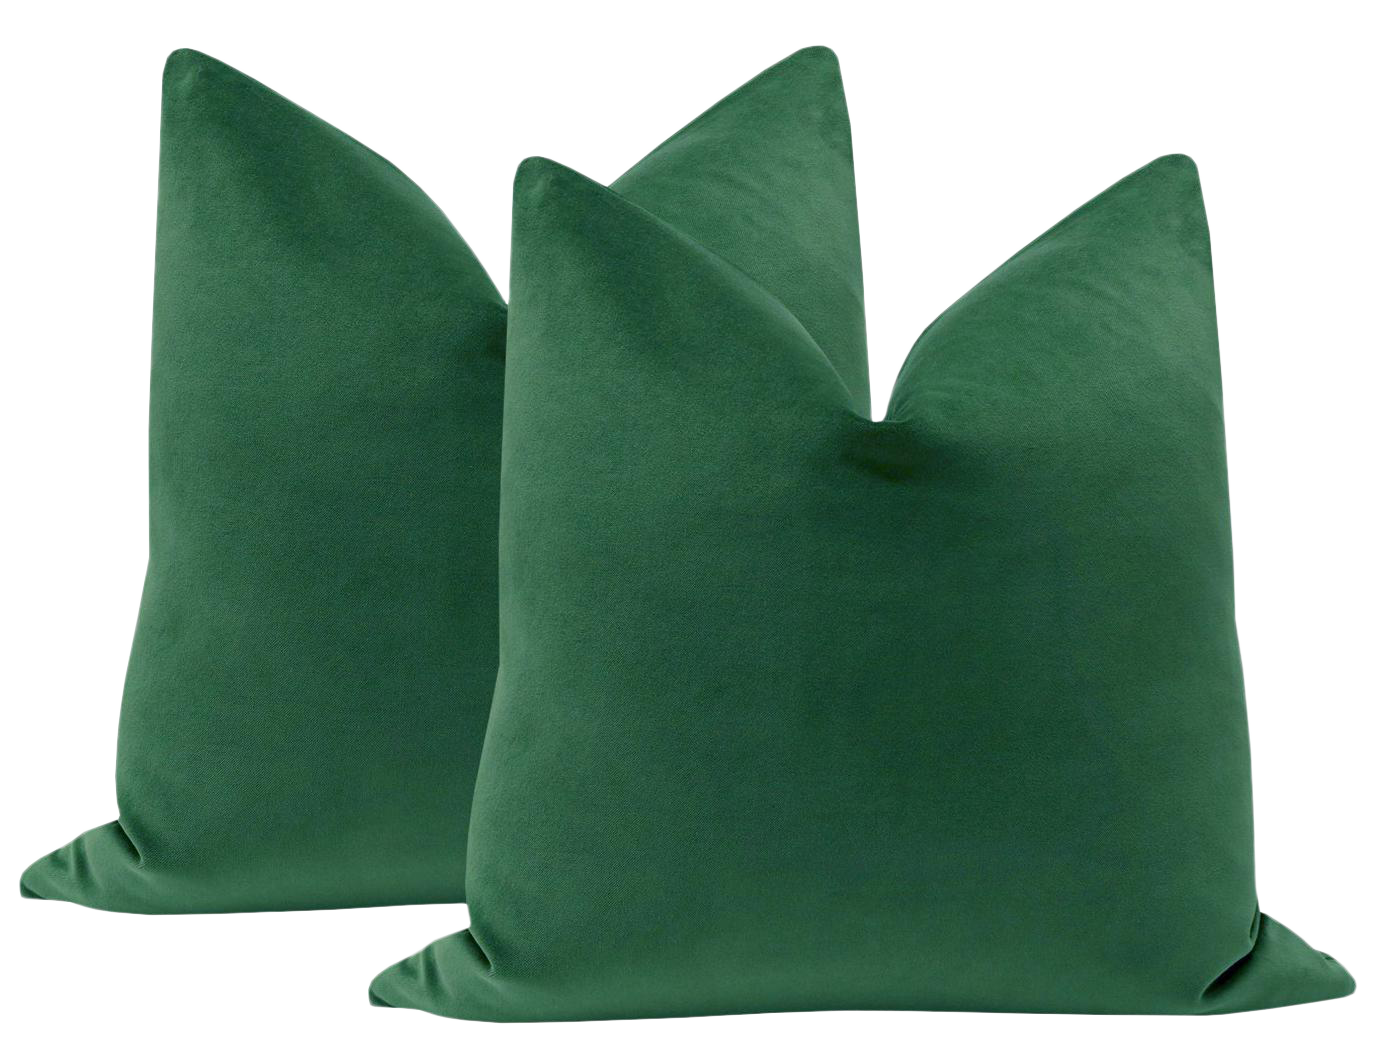 Green Pillow Transparent Images